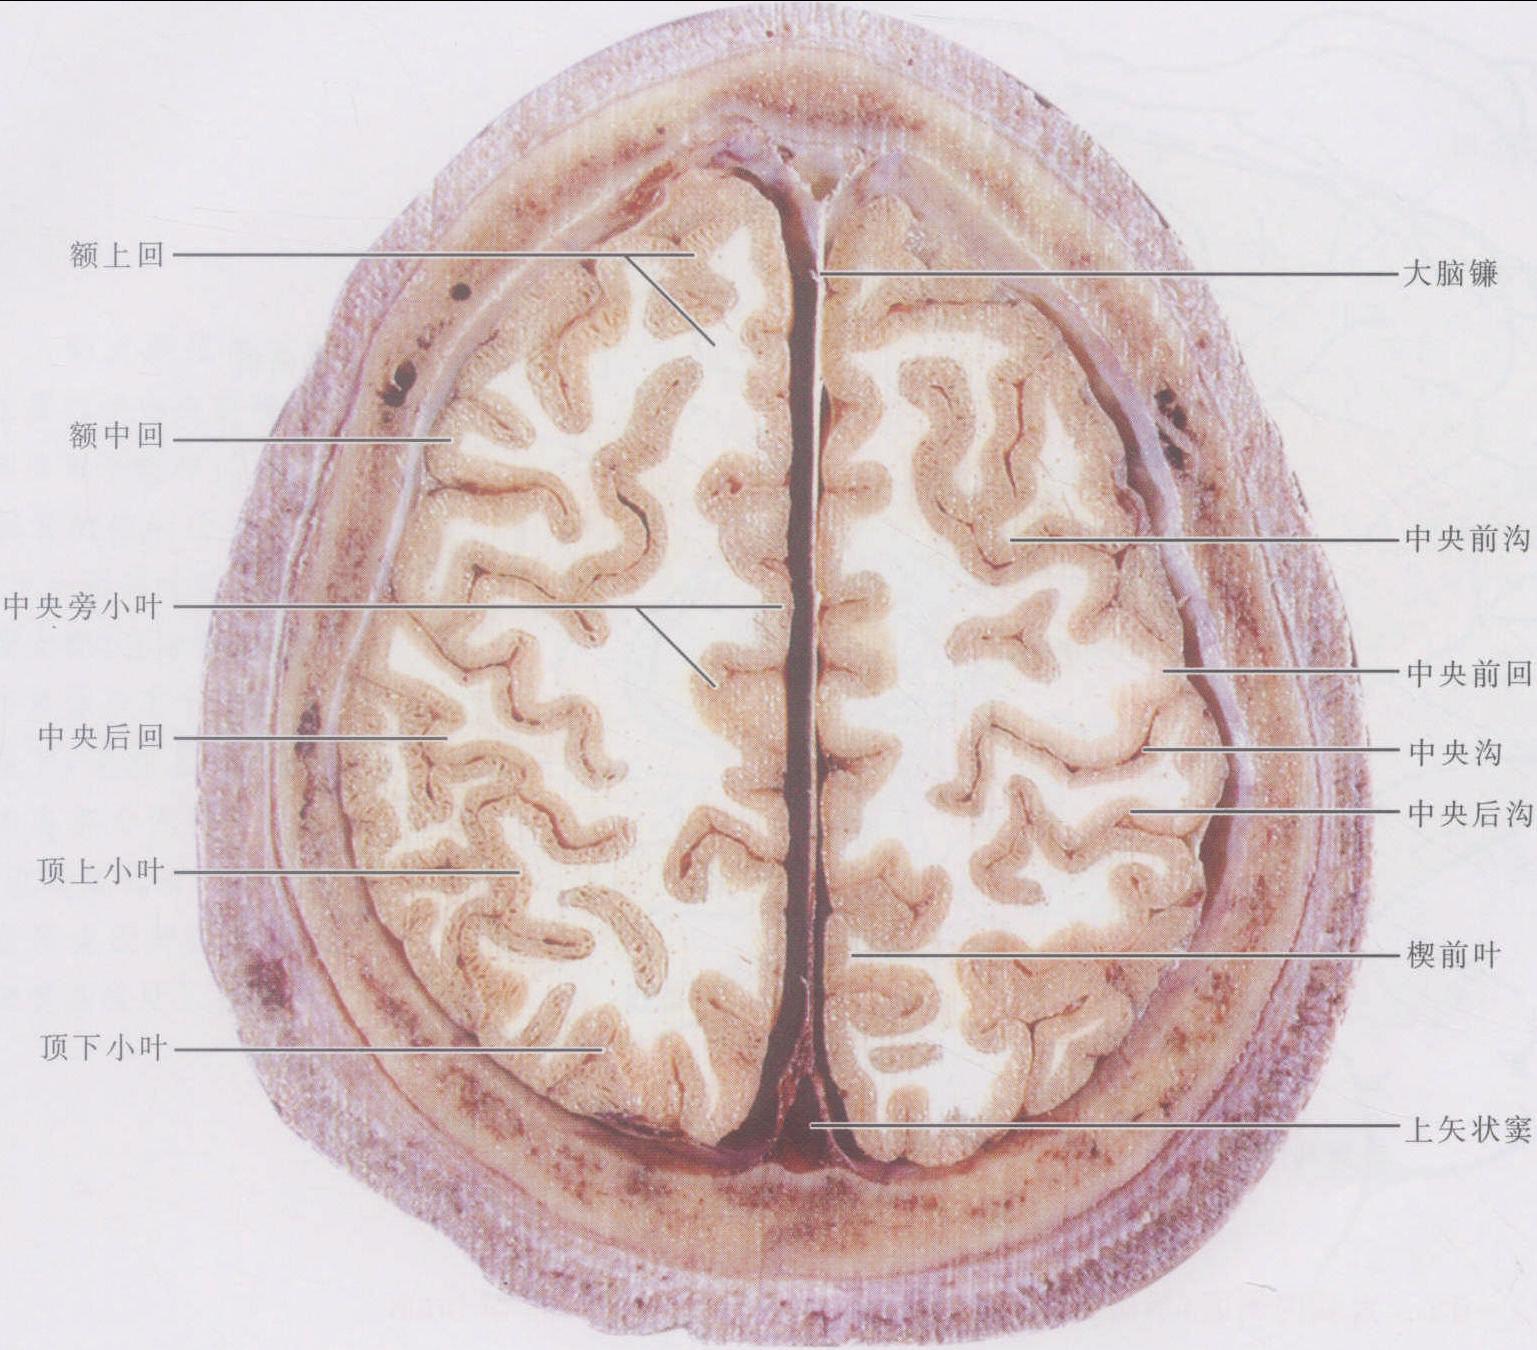 正中线处纵裂内的大脑镰cerebralfalx,分隔两侧半球,前,后端有上矢状